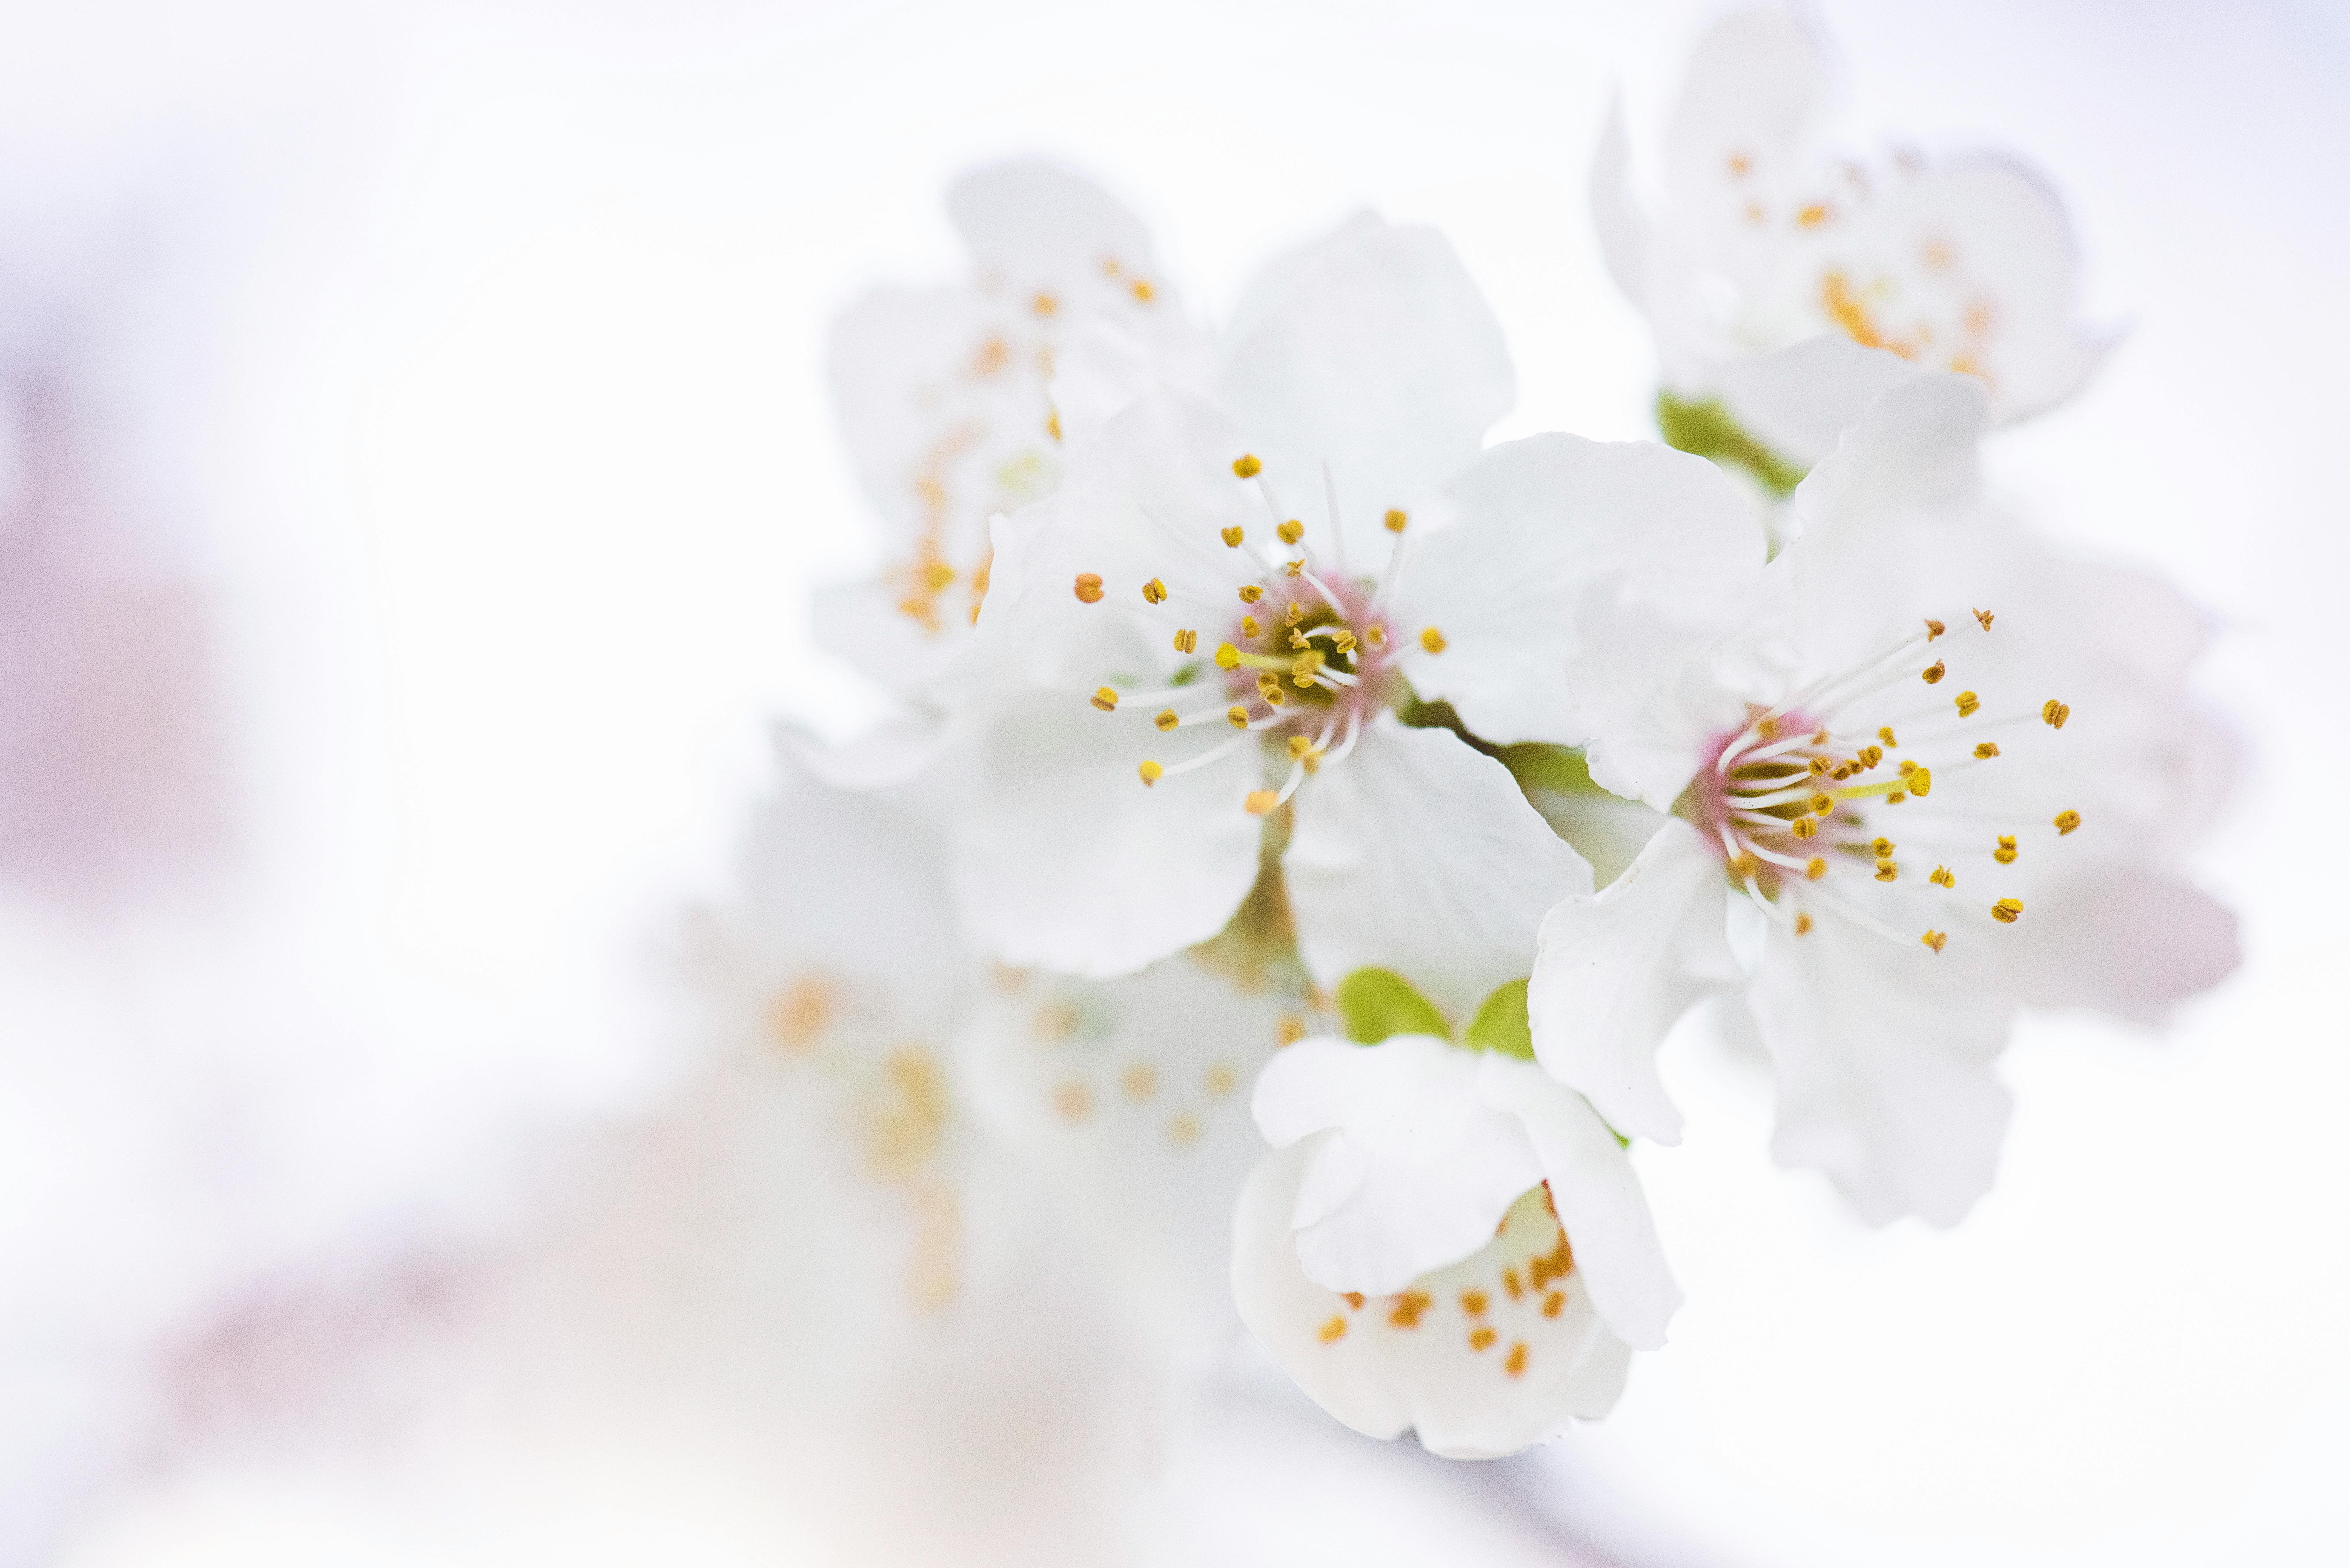 Đón đầu mùa xuân tươi mới với những bông hoa trắng tinh khôi. Hãy khám phá bức ảnh tuyệt đẹp về hoa trắng và cùng tận hưởng vẻ đẹp thiên nhiên ban tặng.